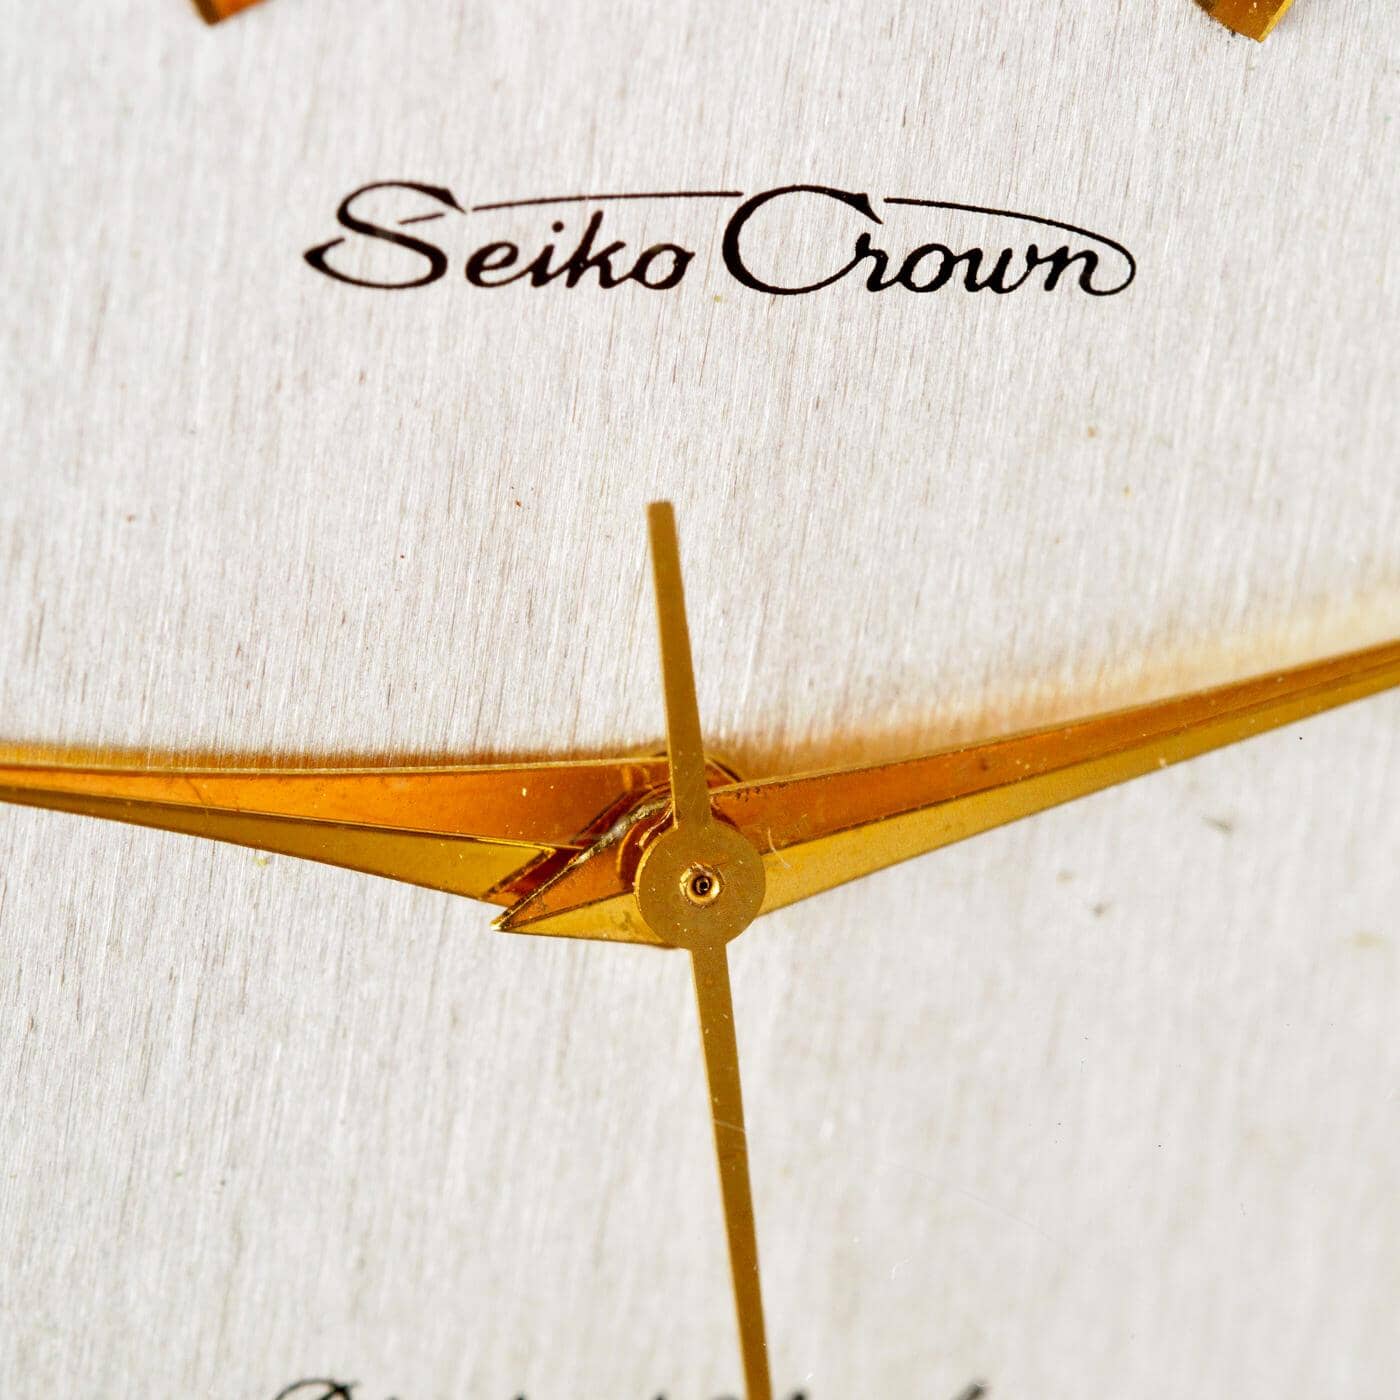 SEIKO Crown J15003 - Arbitro